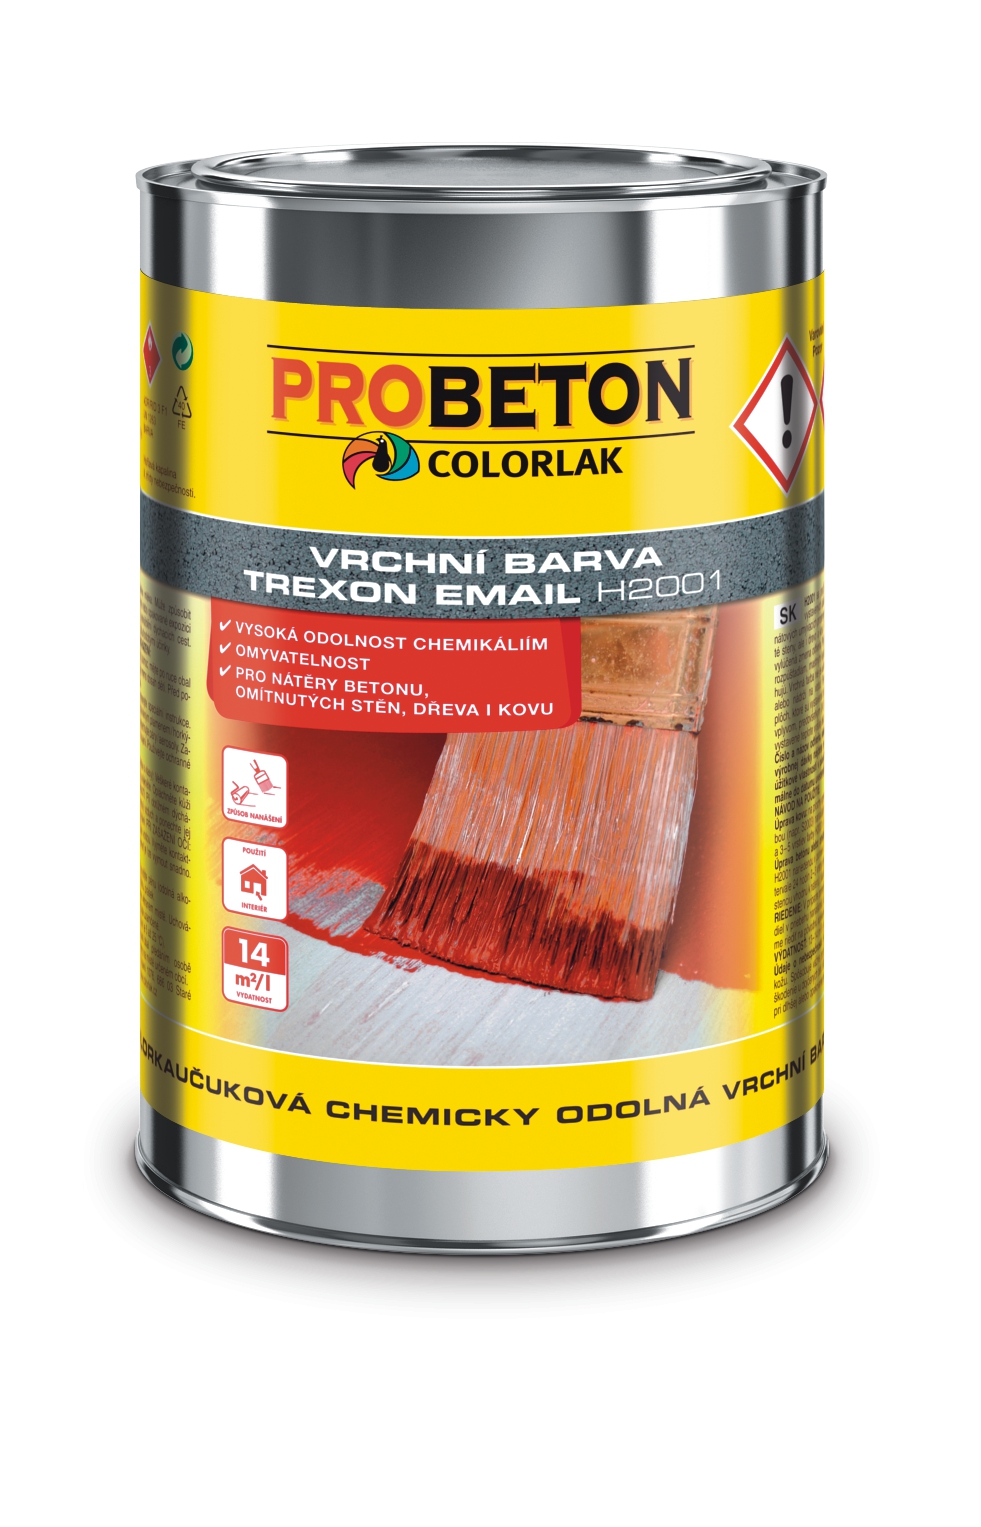 Trexon Email H-2001 -chemicky odolná farba na betón